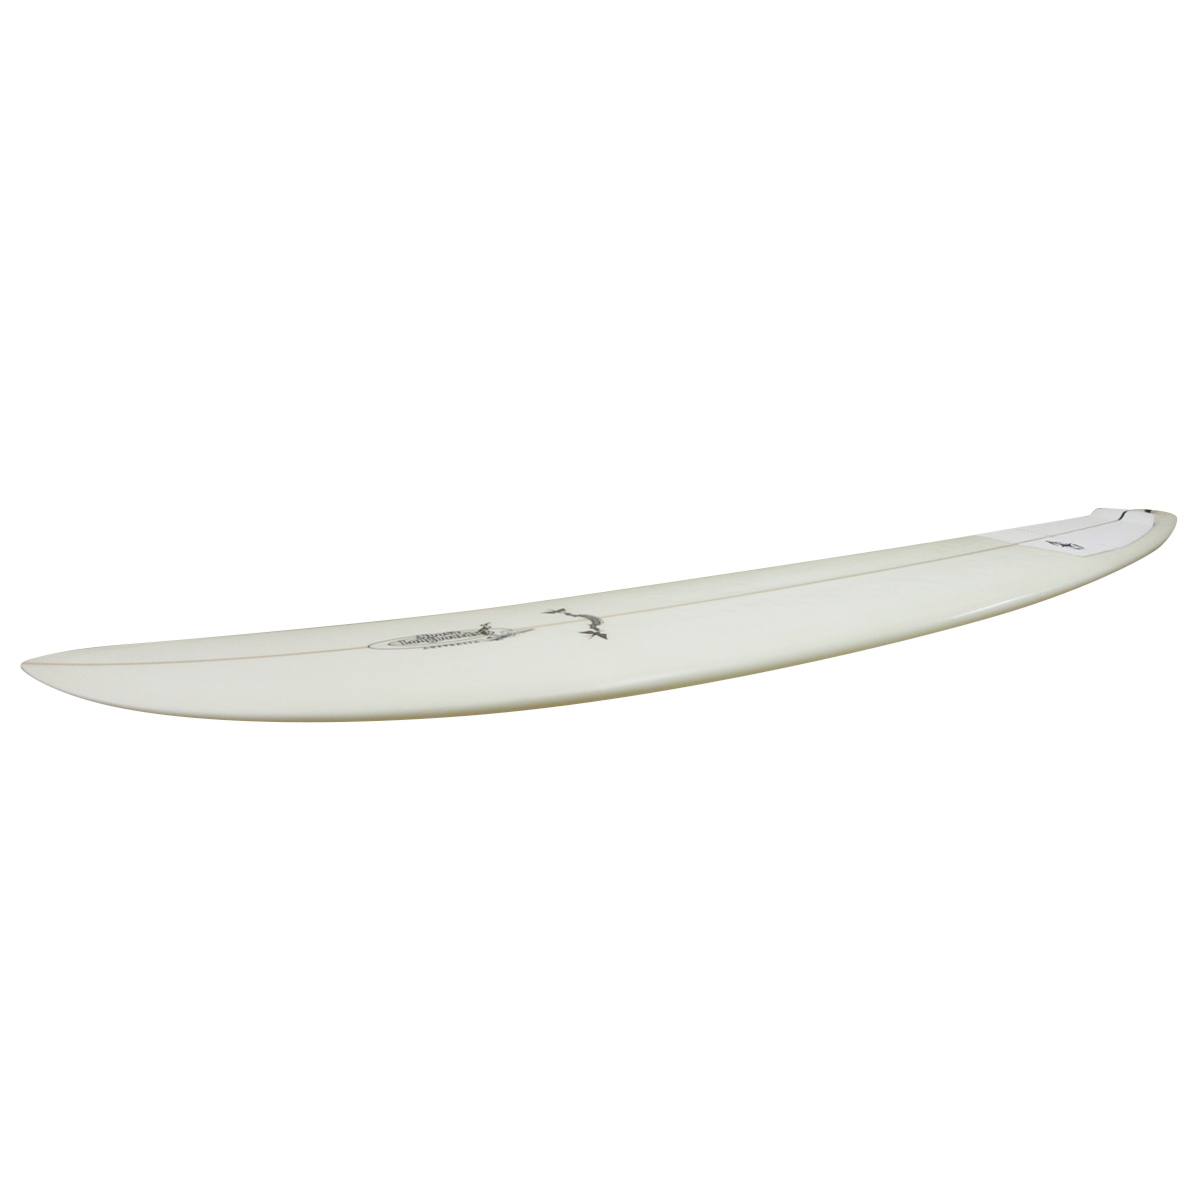 Noosa Longboards / JC PRO Model 9`1